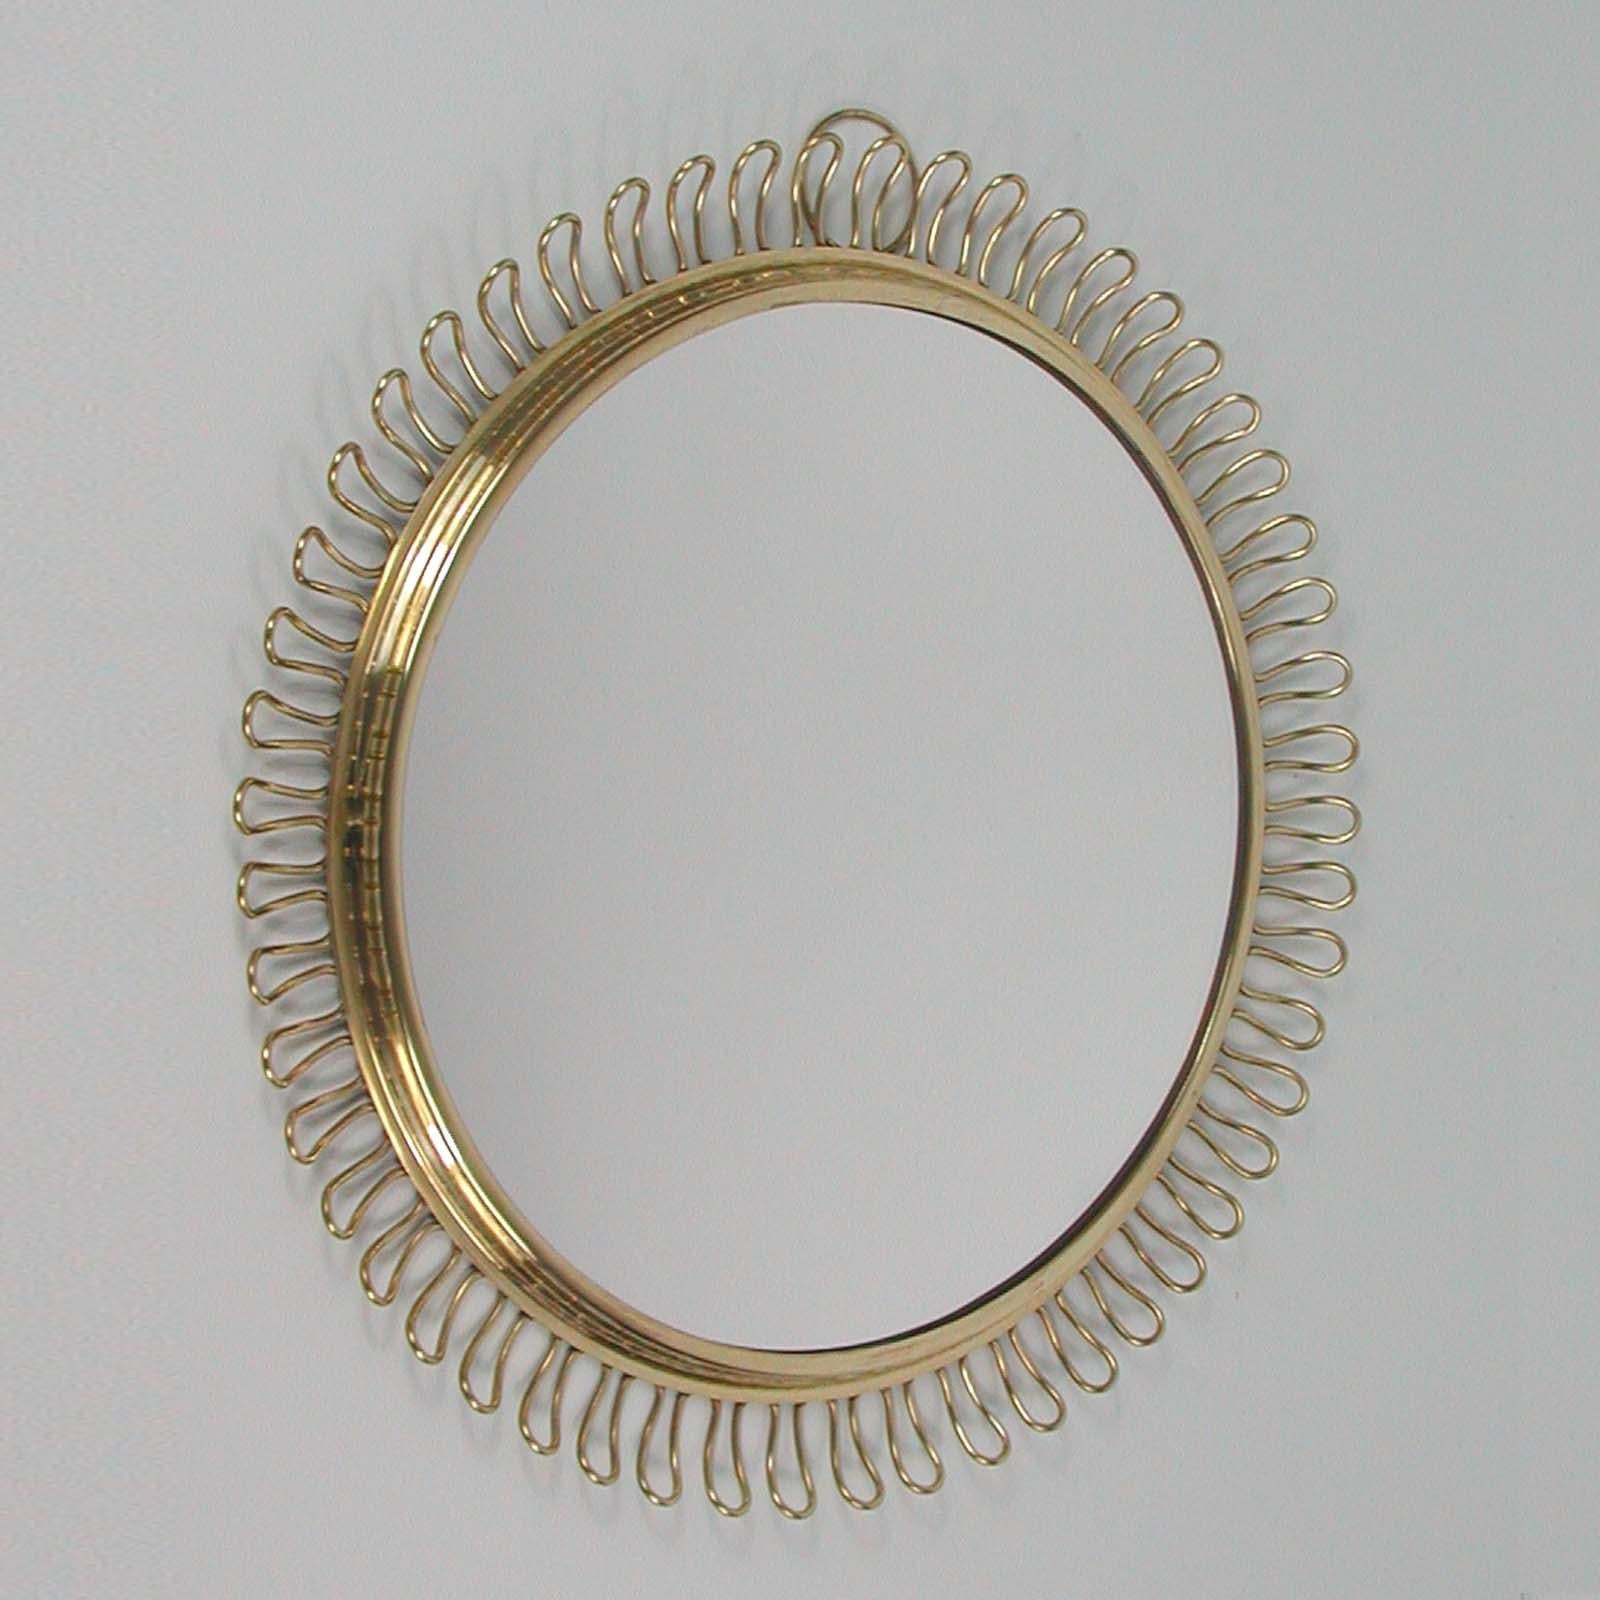 Mid-Century Modern Sculptural Brass round Wall Mirror by Josef Frank Svenskt Tenn, Sweden, 1950s